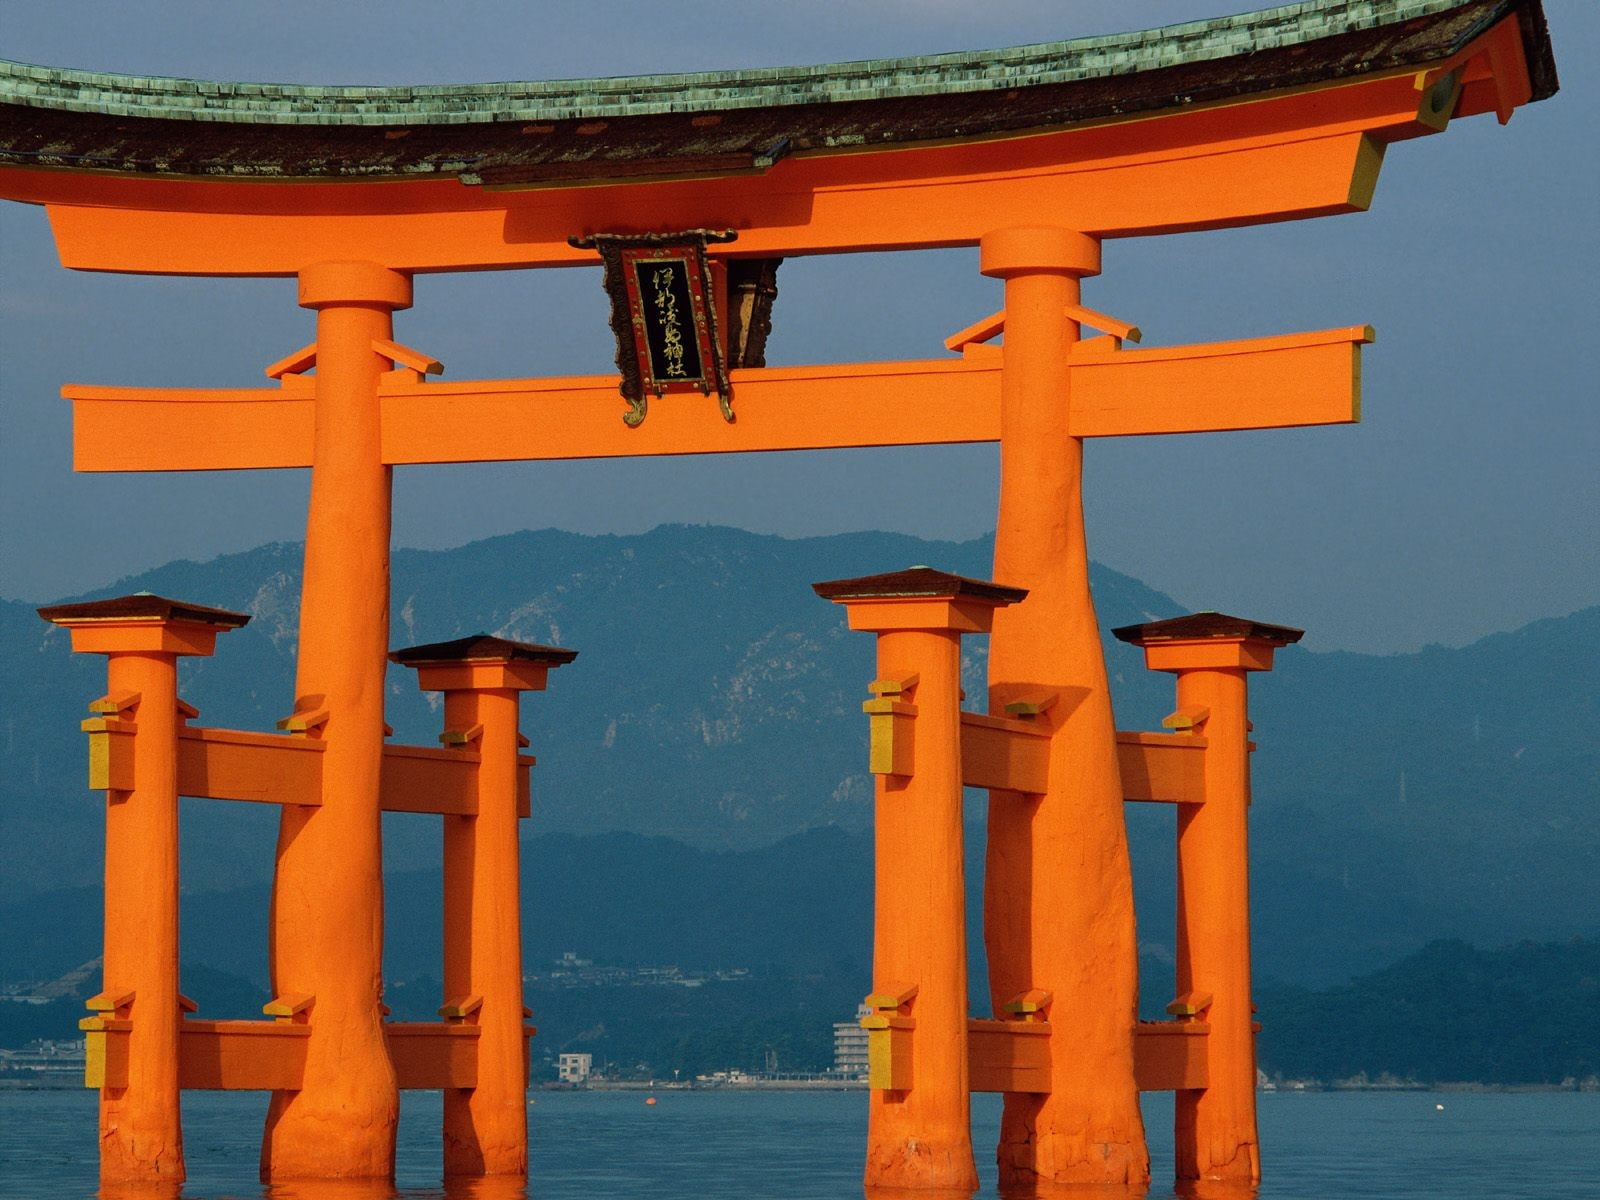 torii, Asian architecture, mountains, Japan, sea, religion